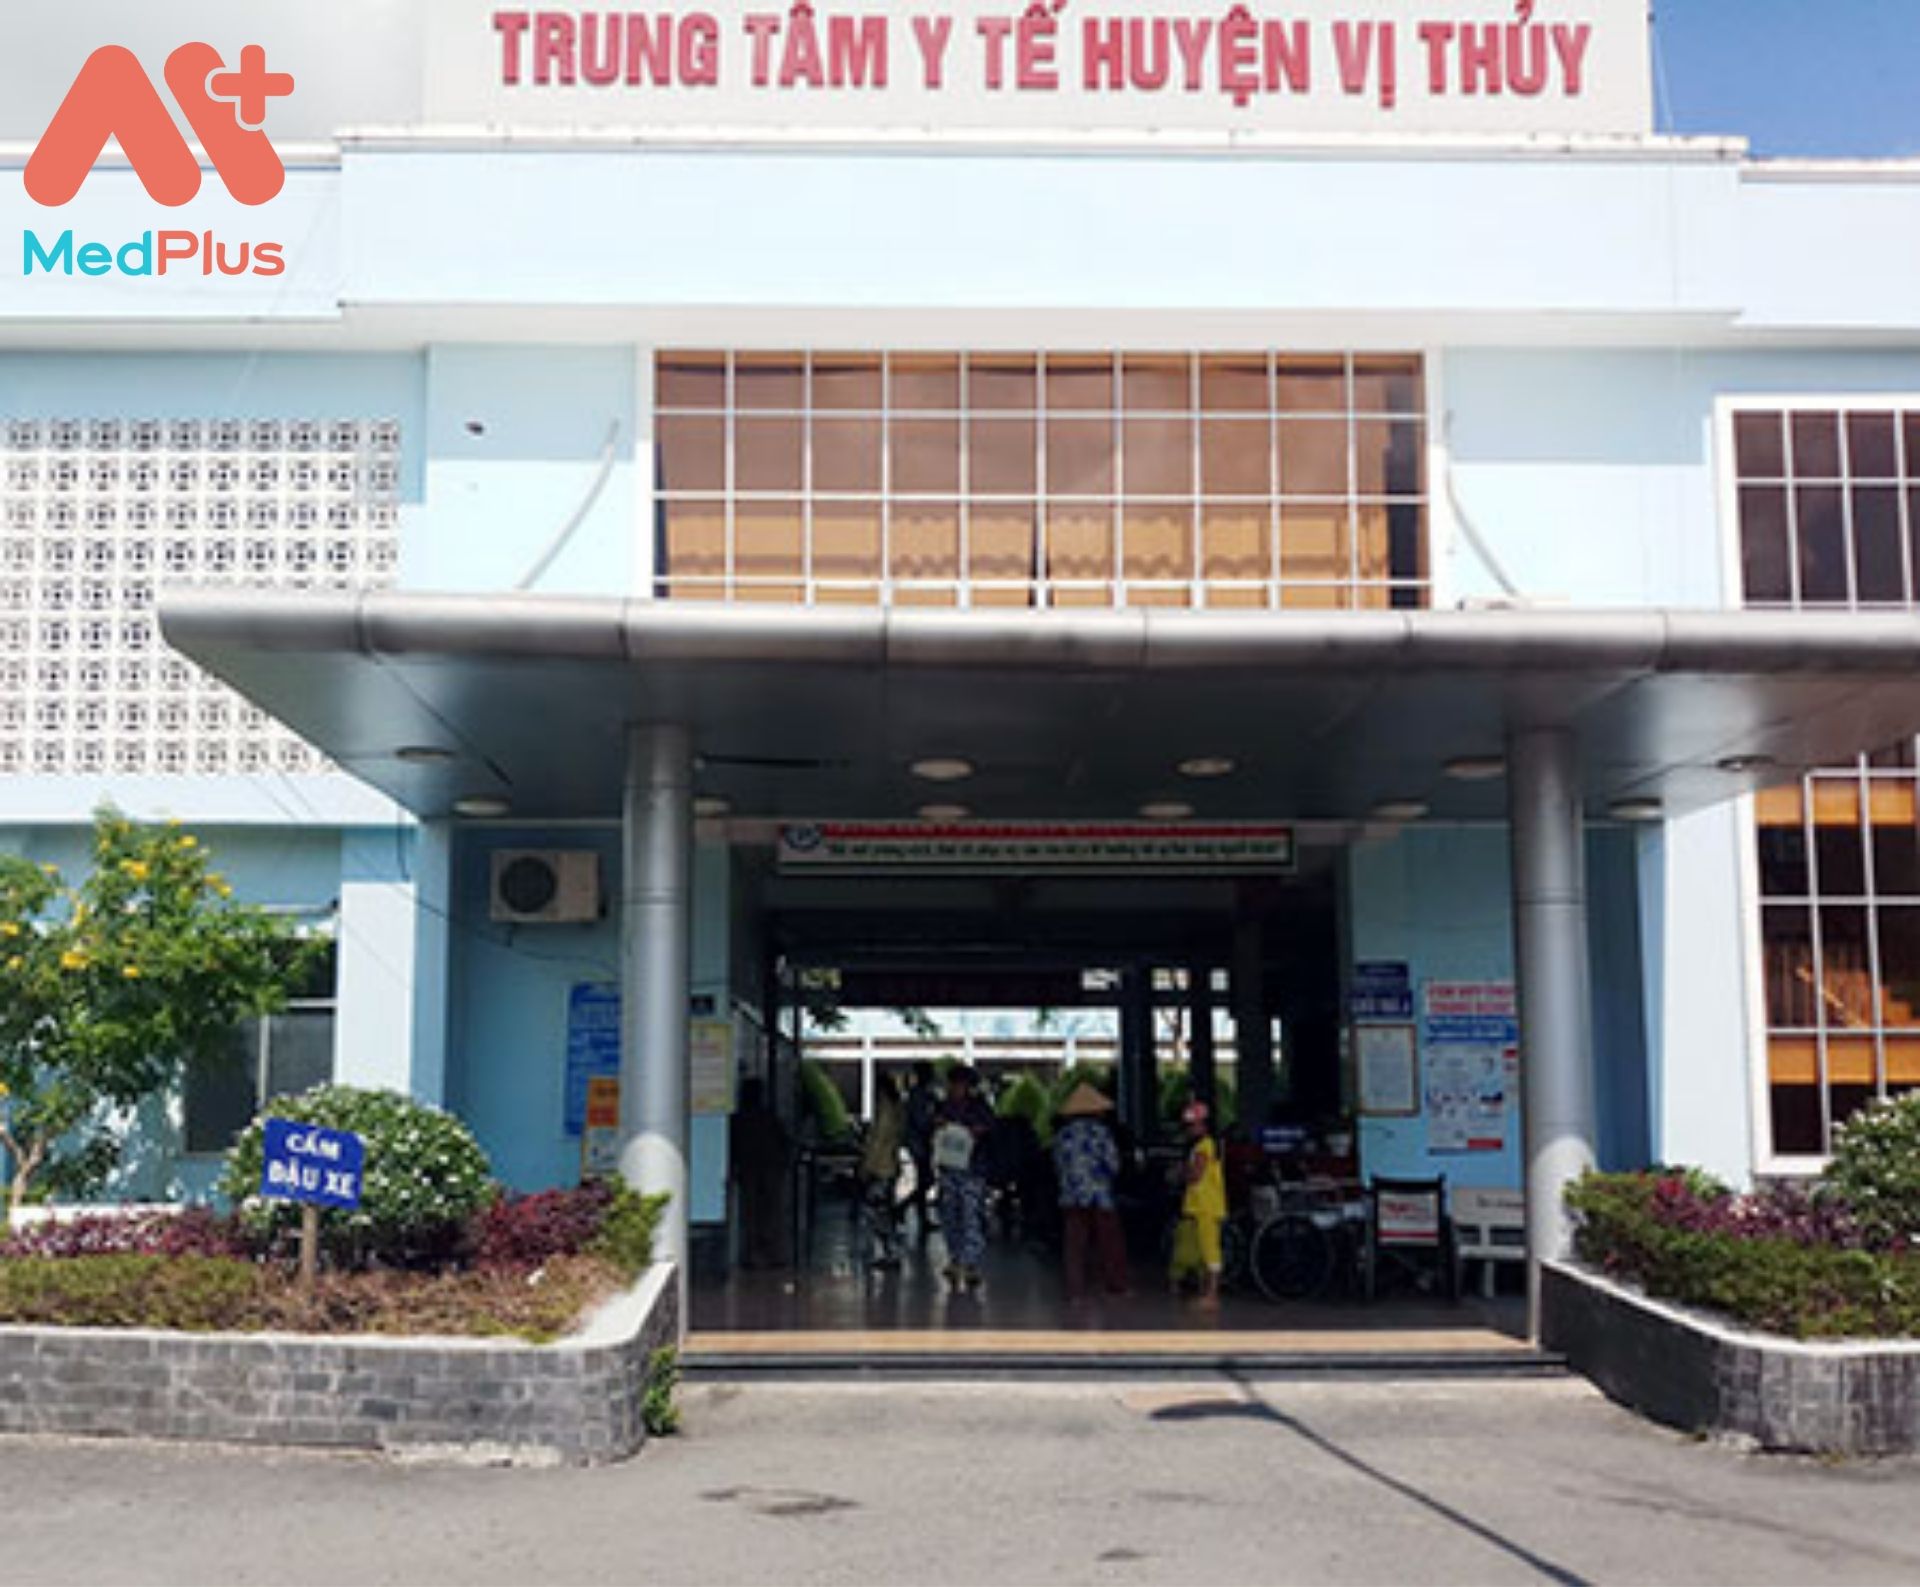 Trung tâm y tế huyện Vị Thủy